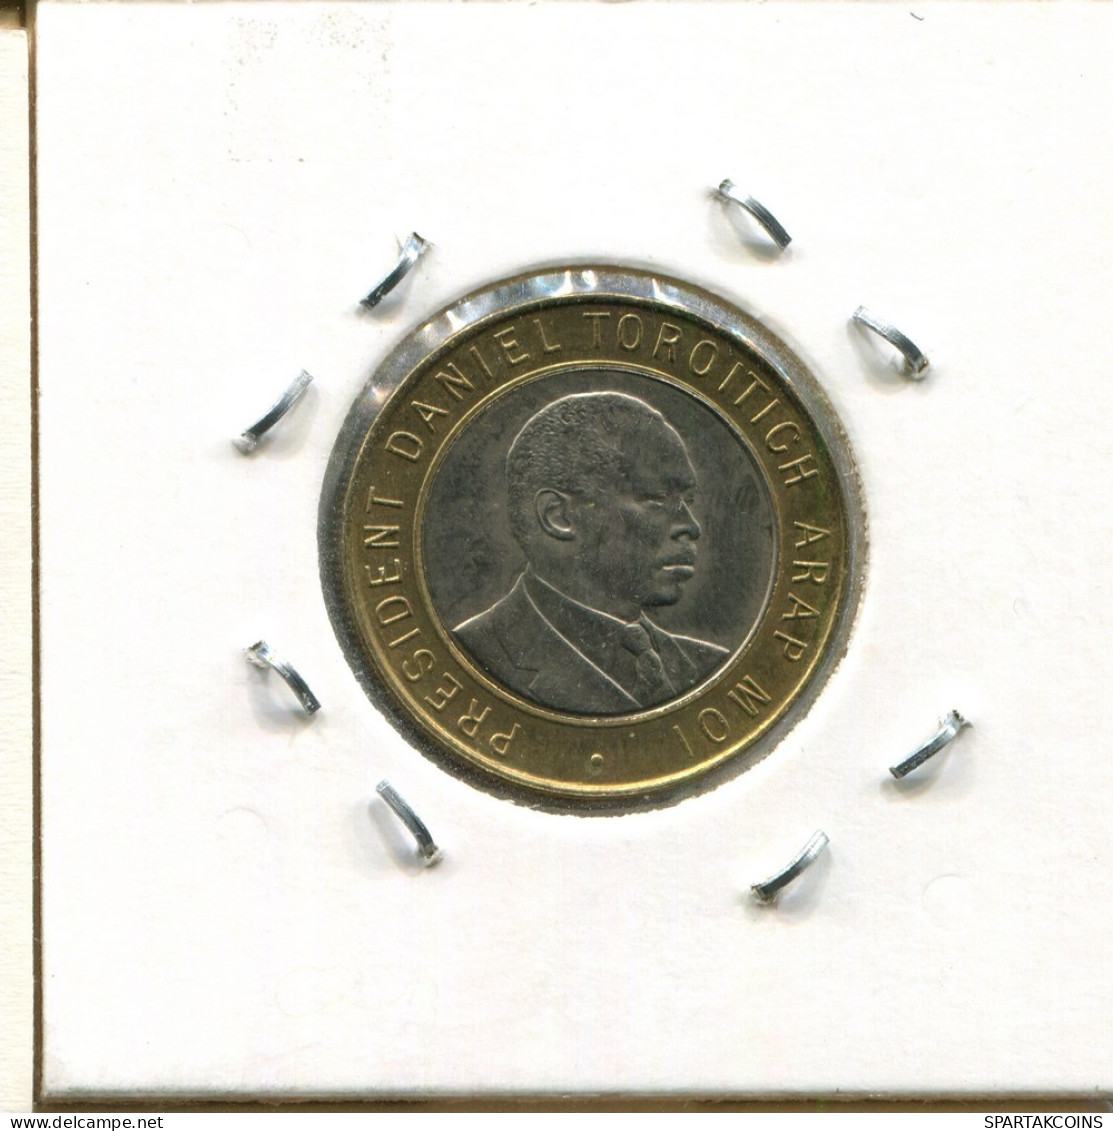 10 SHILLINGS 1997 KENYA BIMETALLIC Moneda #AS336.E.A - Kenia